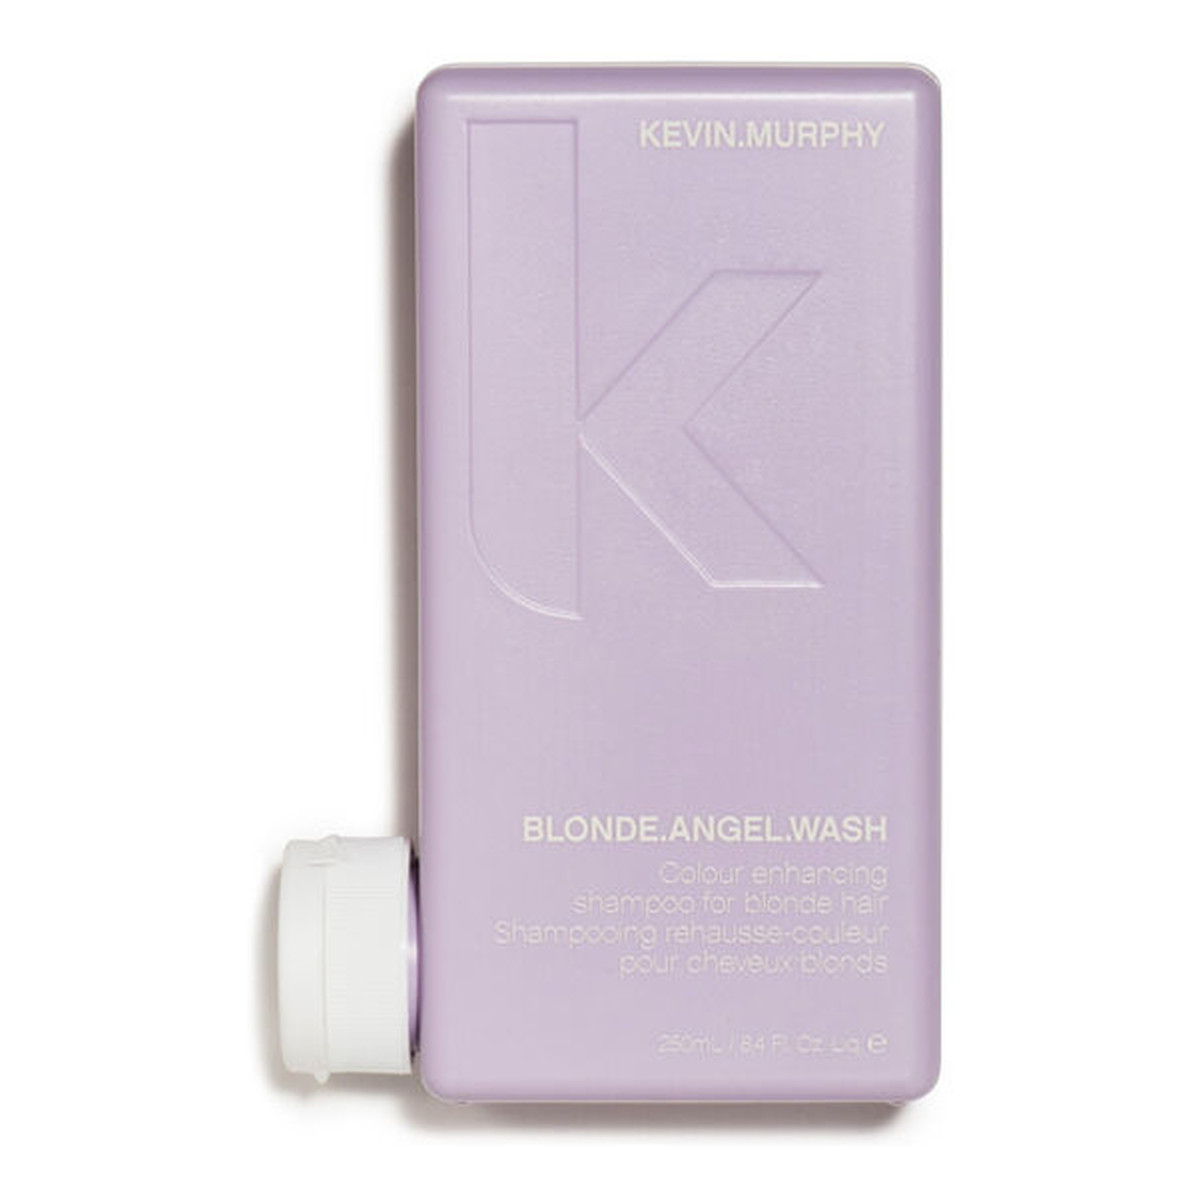 Kevin Murphy Blonde Angel Wash szampon wzmacniający kolor do włosów blond 250ml